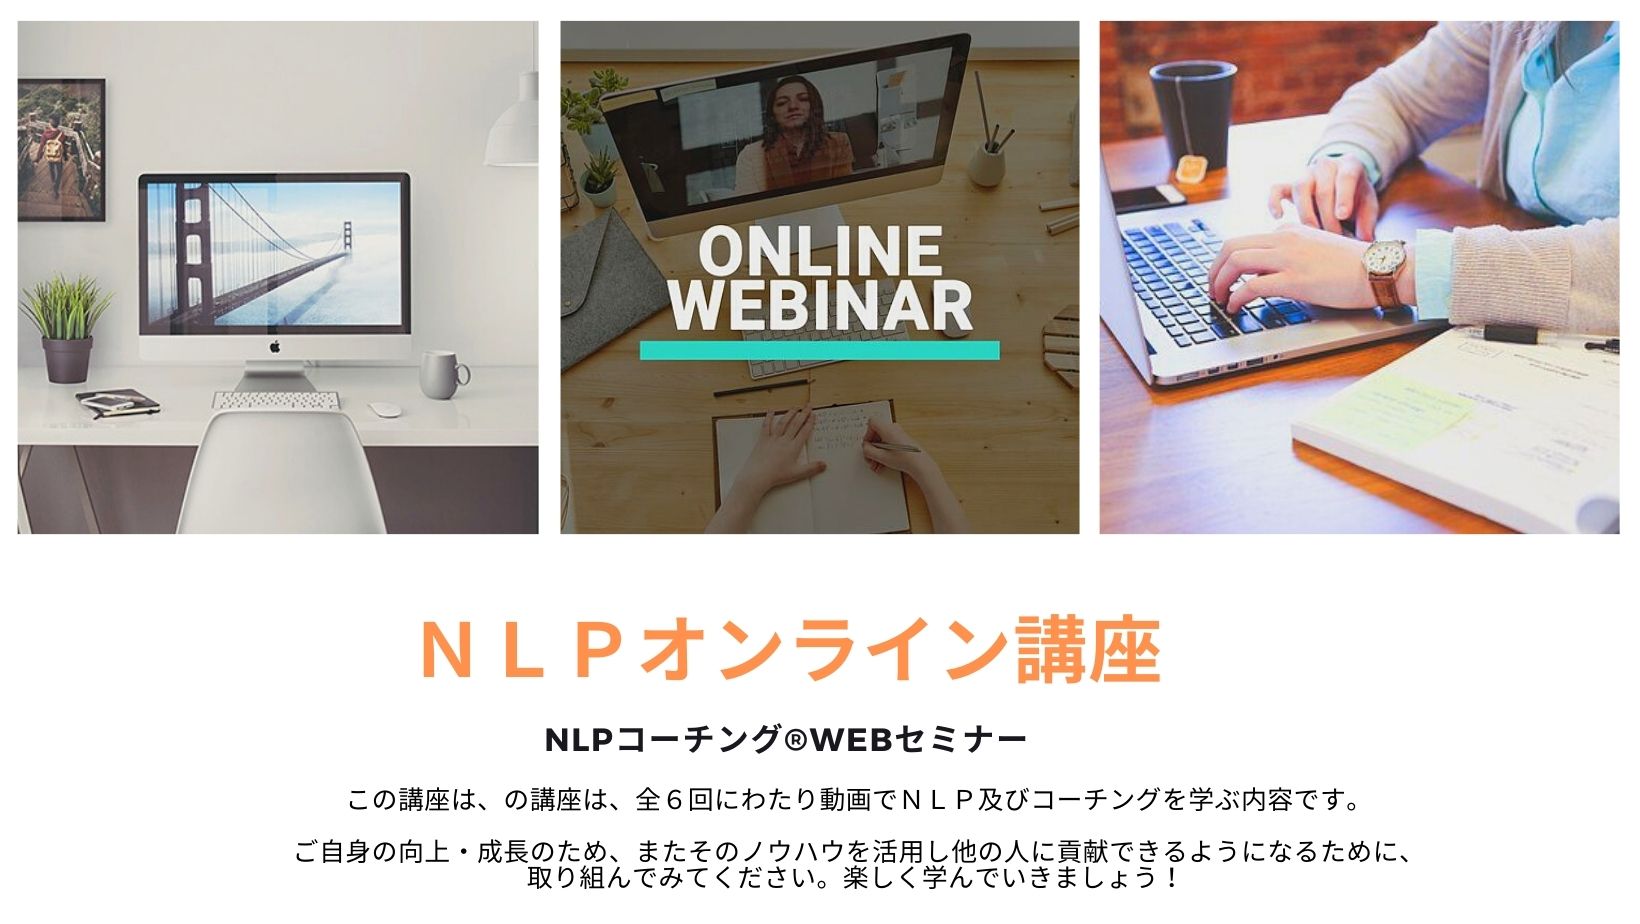 一般社団法人 日本NLP能力開発協会